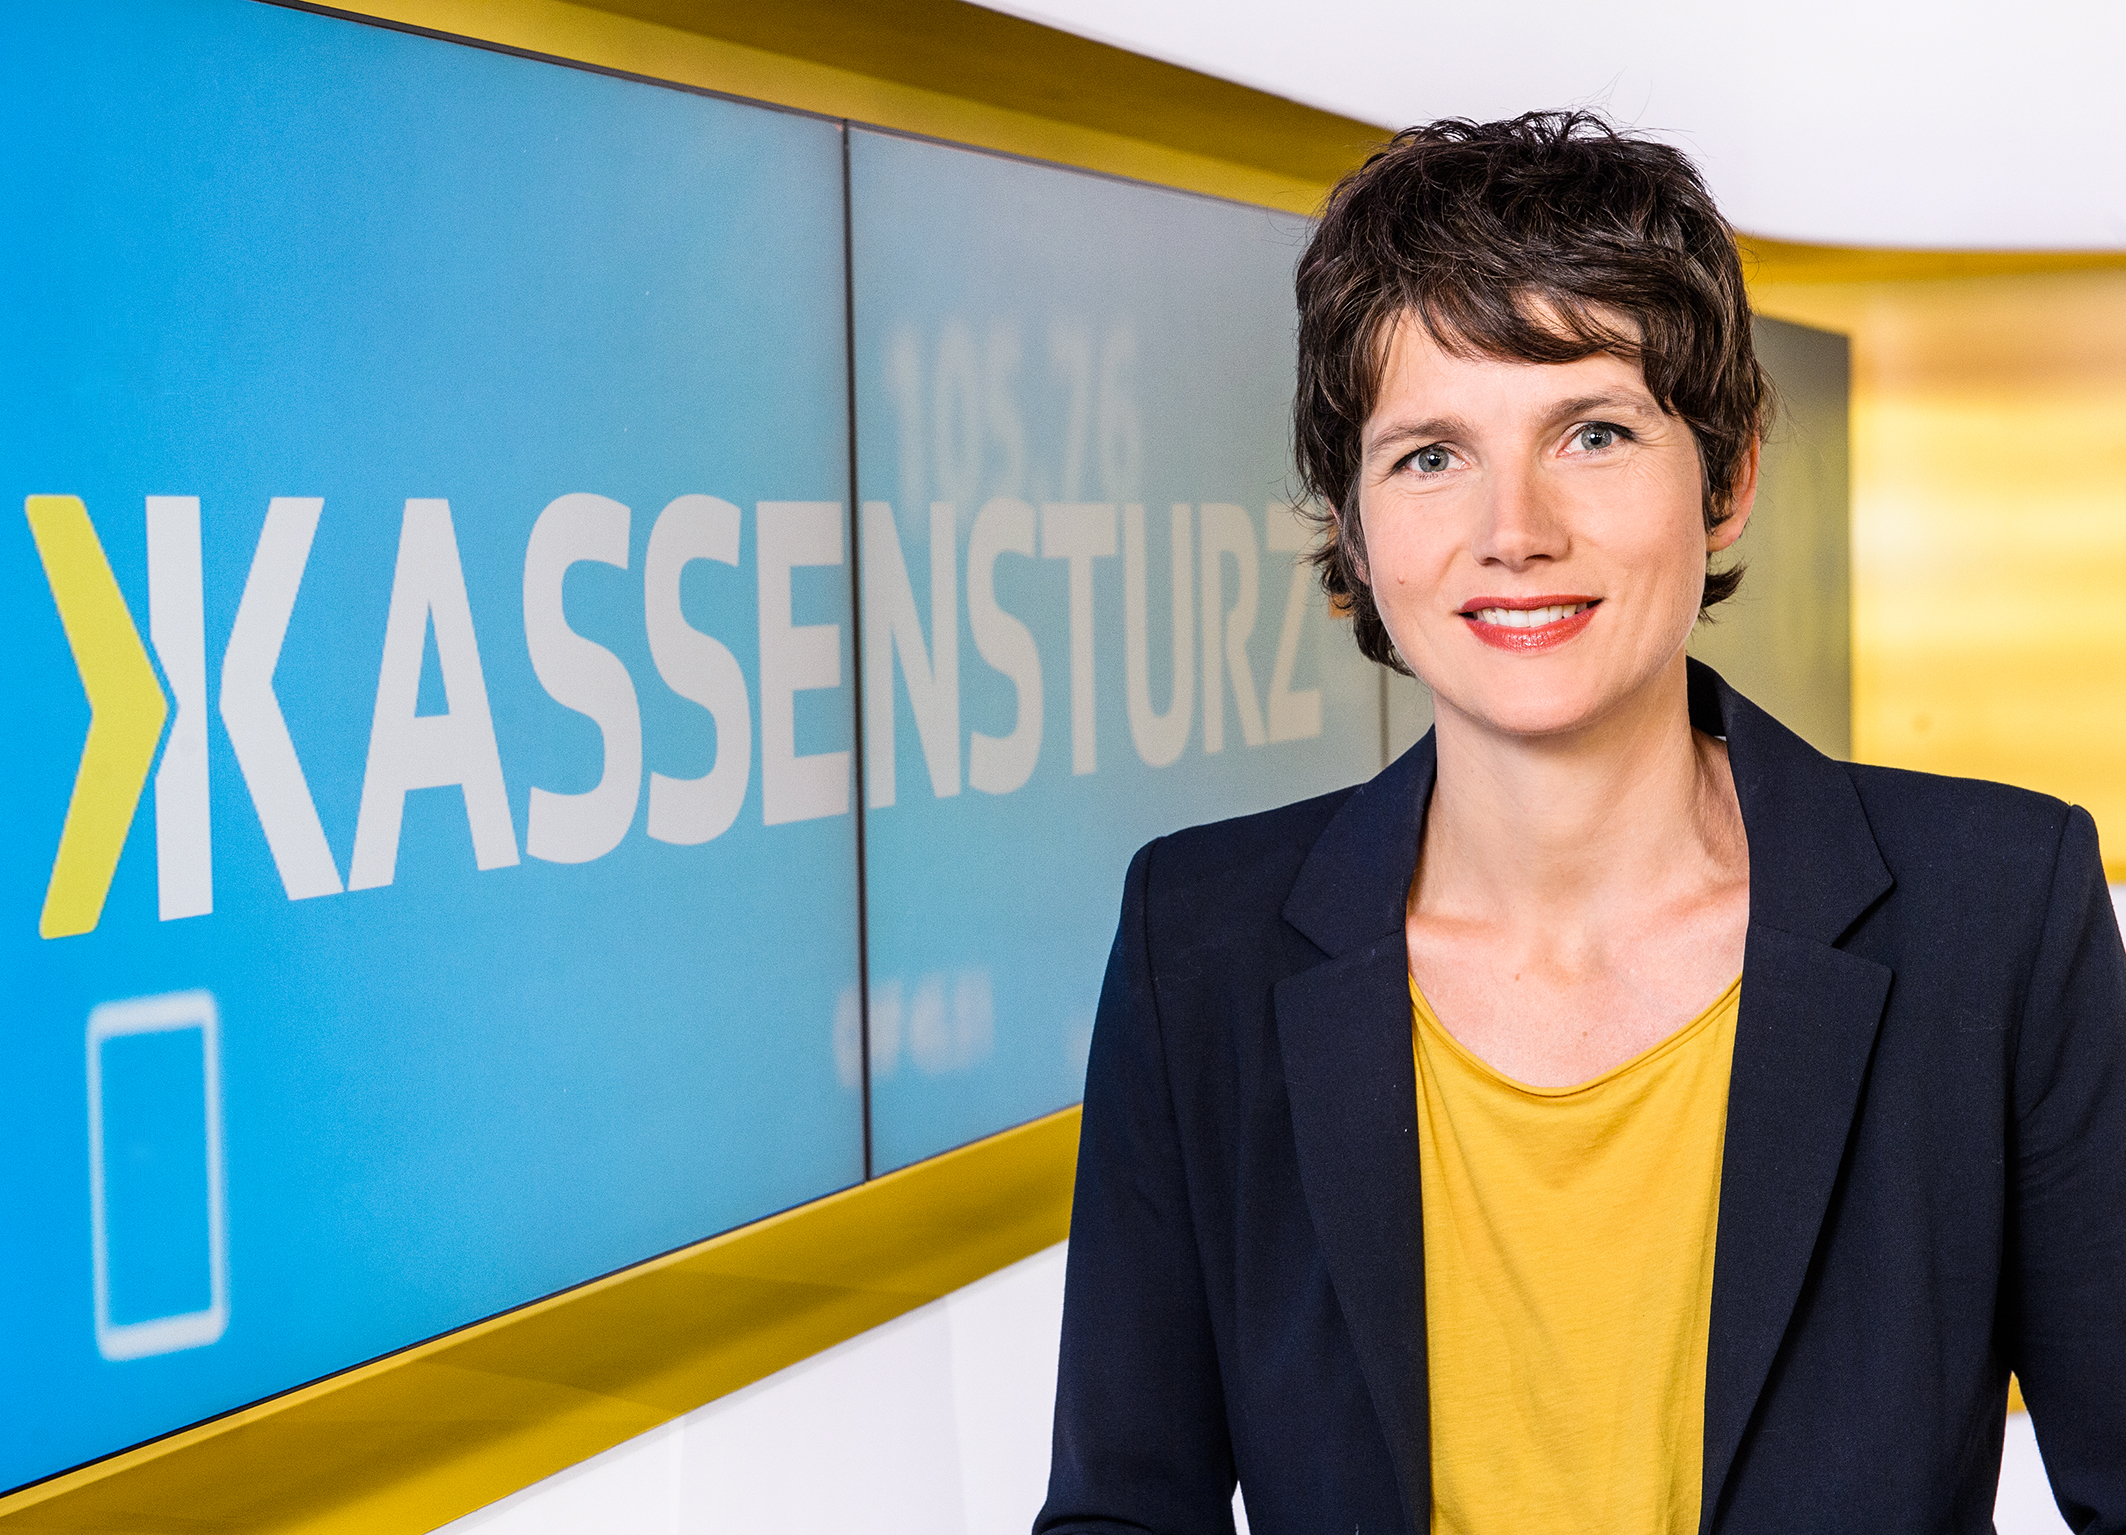 Kathrin Winzenried Moderatorin Kassensturz 2016